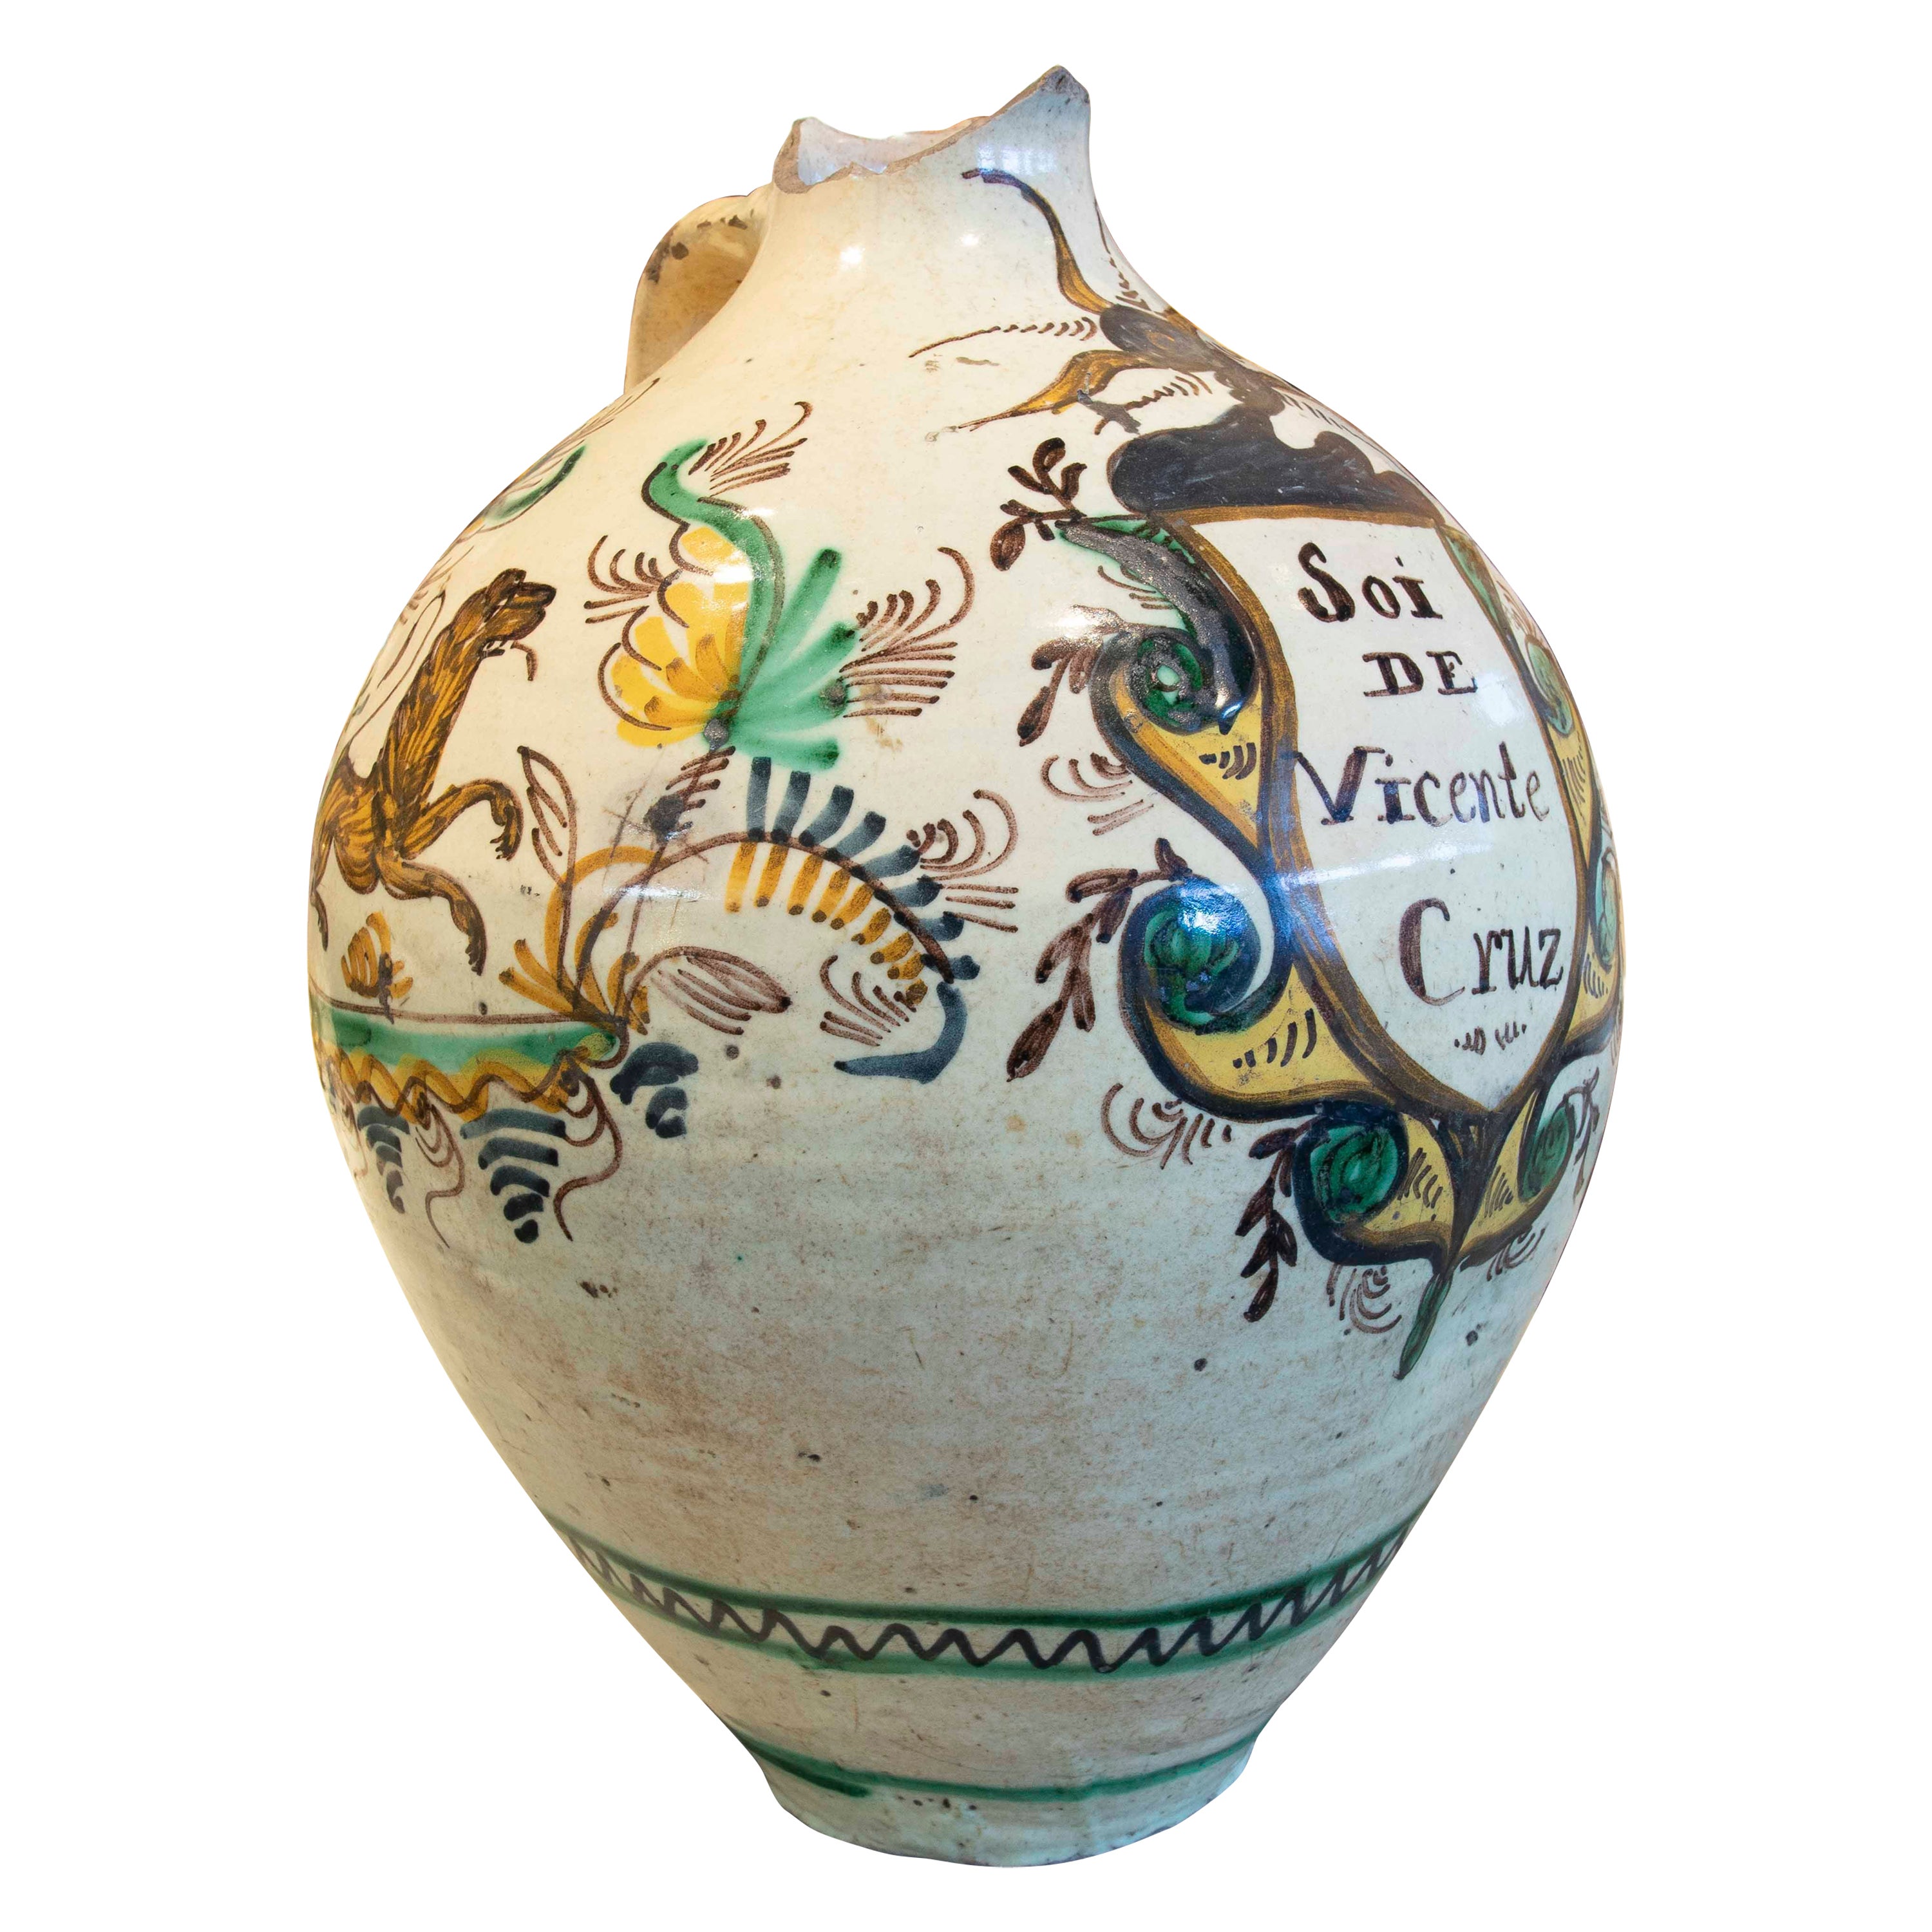 Spanische glasierte Keramikvase aus Spanien mit Inschrift „Soi de Vicente Cruz“